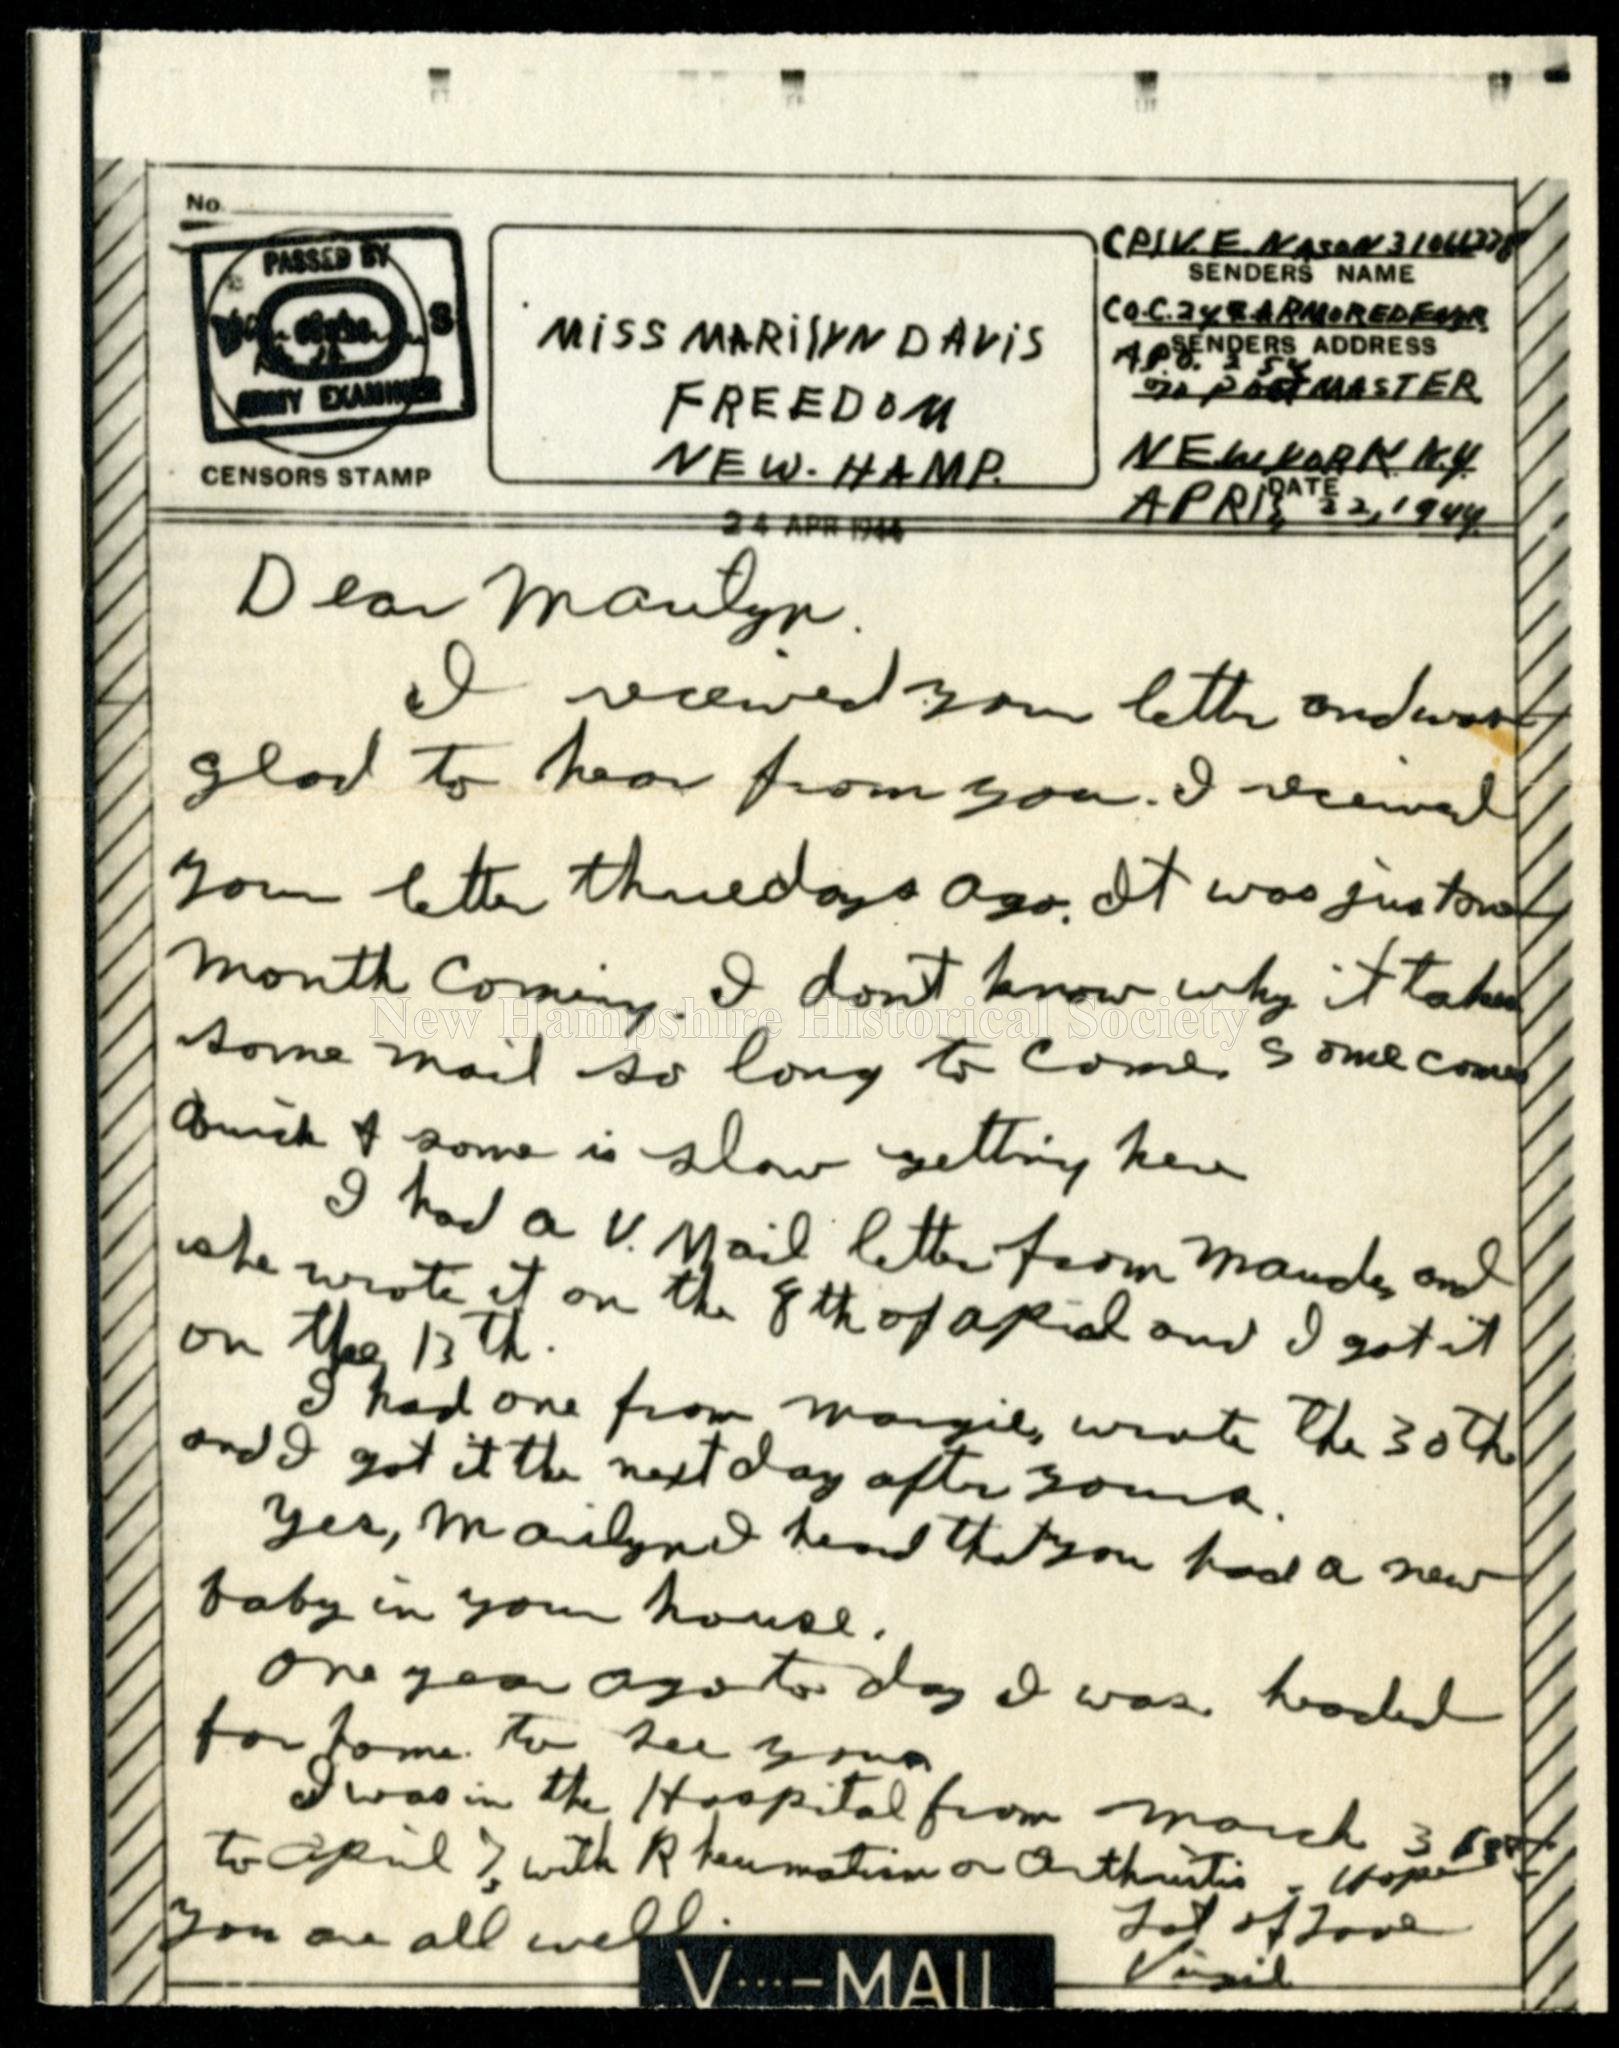 إقراض المال شعار براءة الإختراع  New Hampshire Historical Society - Letter from Virgil E. Nason to Marilyn  Davis, 1944 April 22 - Letter from Virgil E. Nason to Marilyn Davis, 1944  April 22